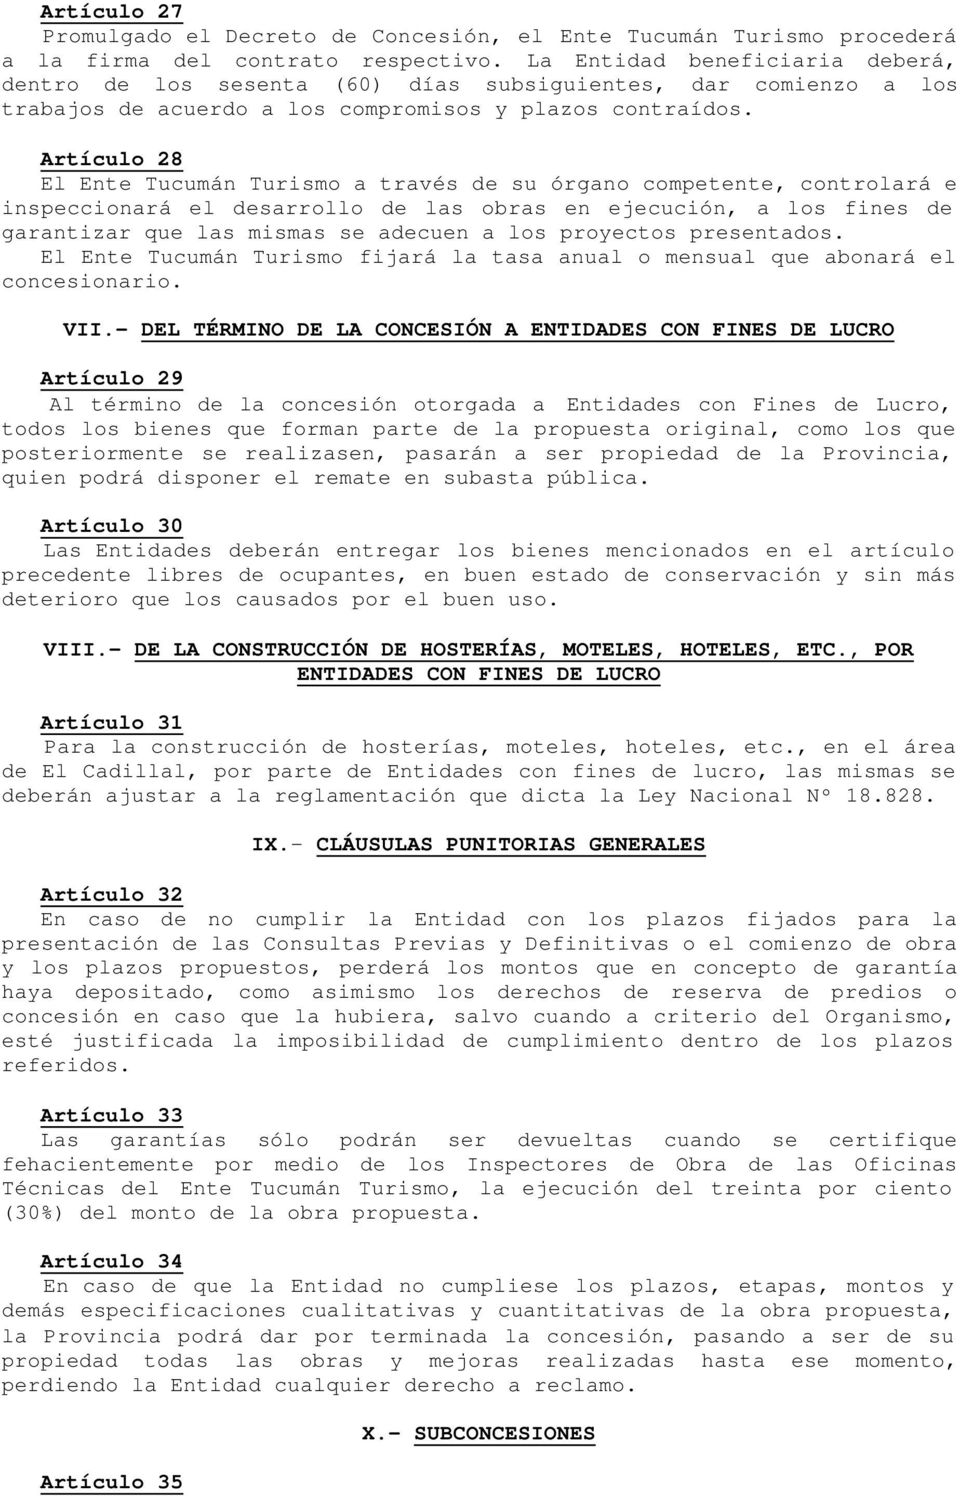 Artículo 28 El Ente Tucumán Turismo a través de su órgano competente, controlará e inspeccionará el desarrollo de las obras en ejecución, a los fines de garantizar que las mismas se adecuen a los